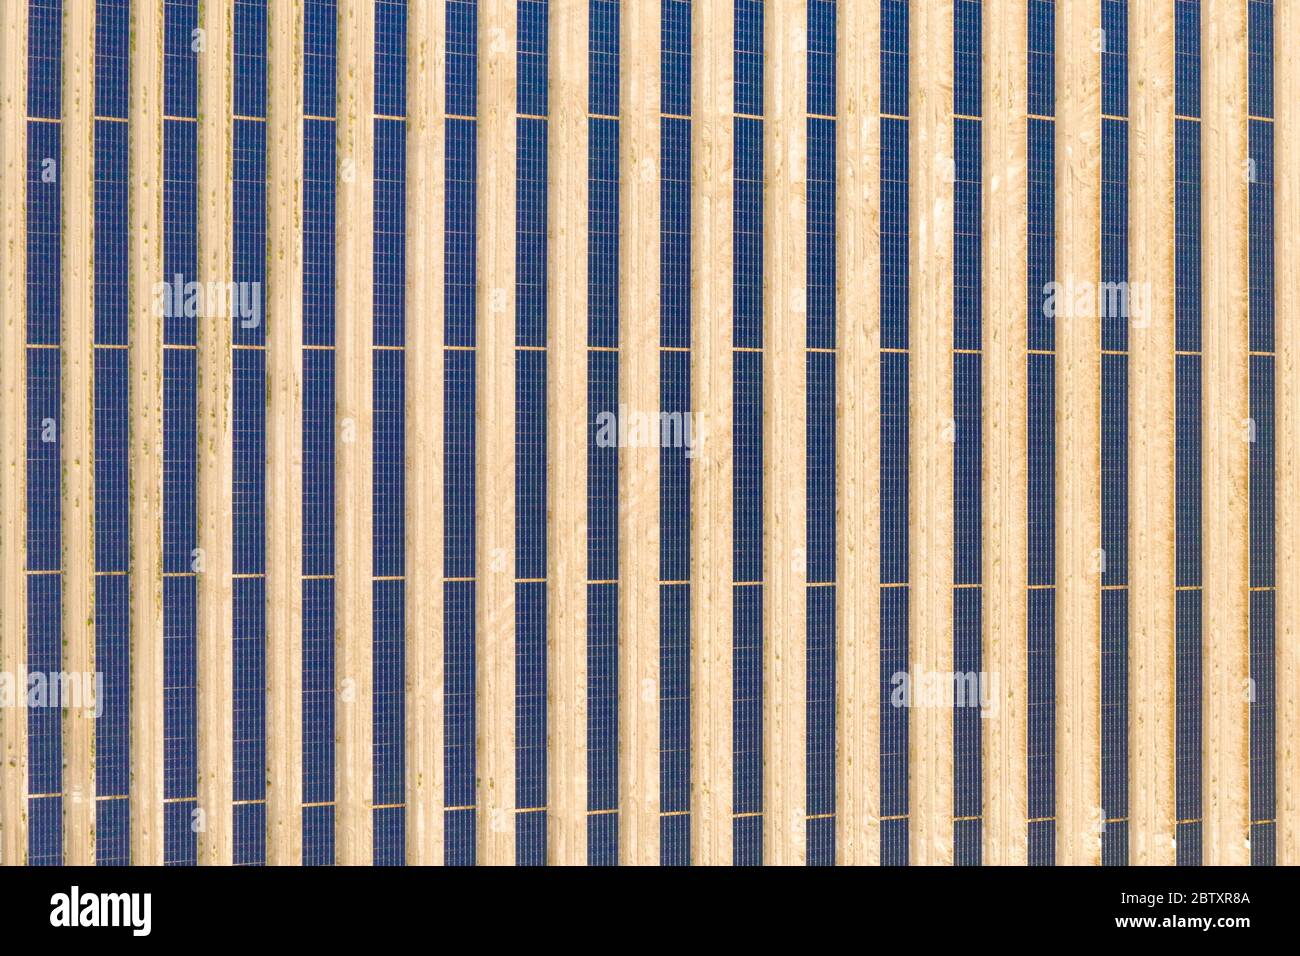 Vue aérienne verticale d'une ferme de panneaux solaires photovoltaïques produisant une énergie renouvelable durable dans une centrale électrique désertique. Banque D'Images